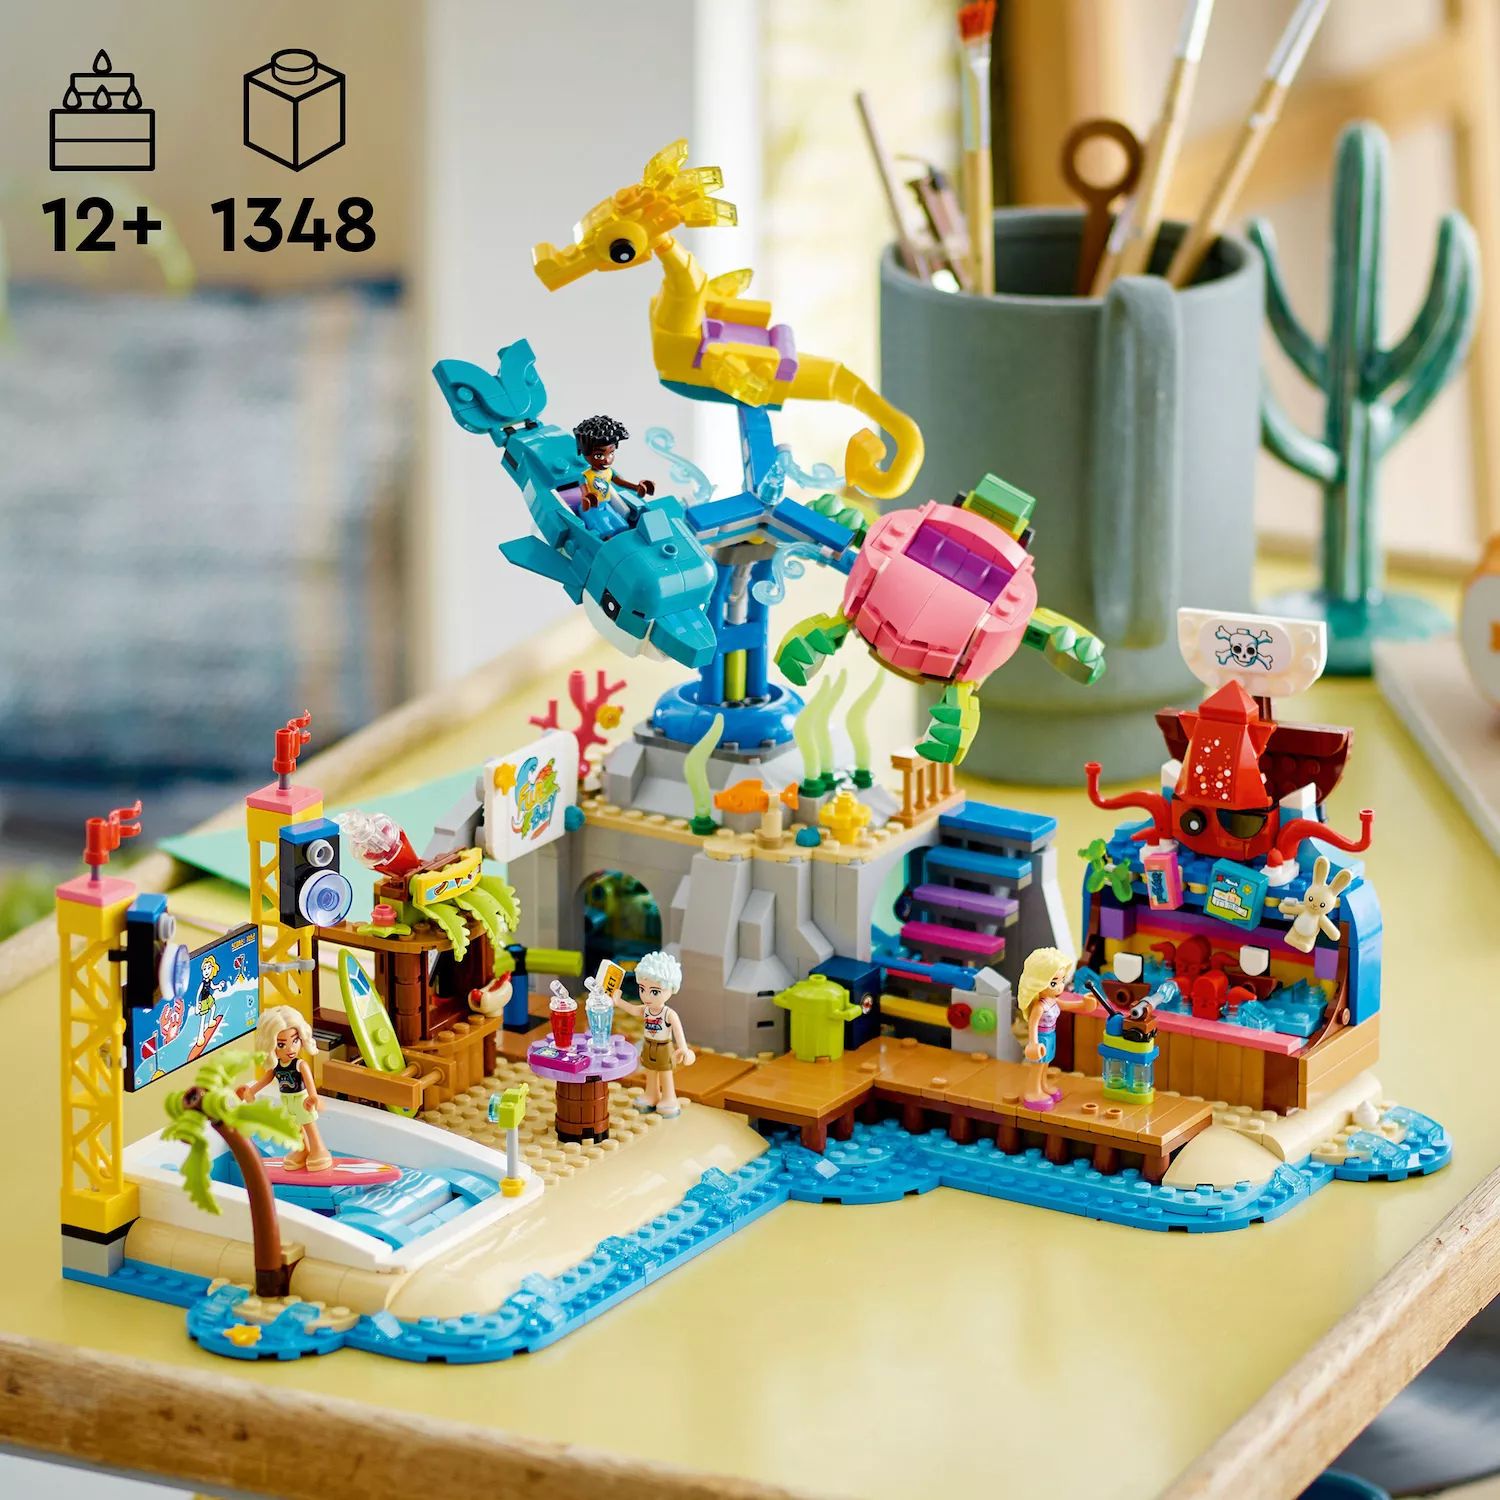 Конструктор LEGO Friends для подростков в пляжном парке развлечений 41737 (1348 деталей) LEGO